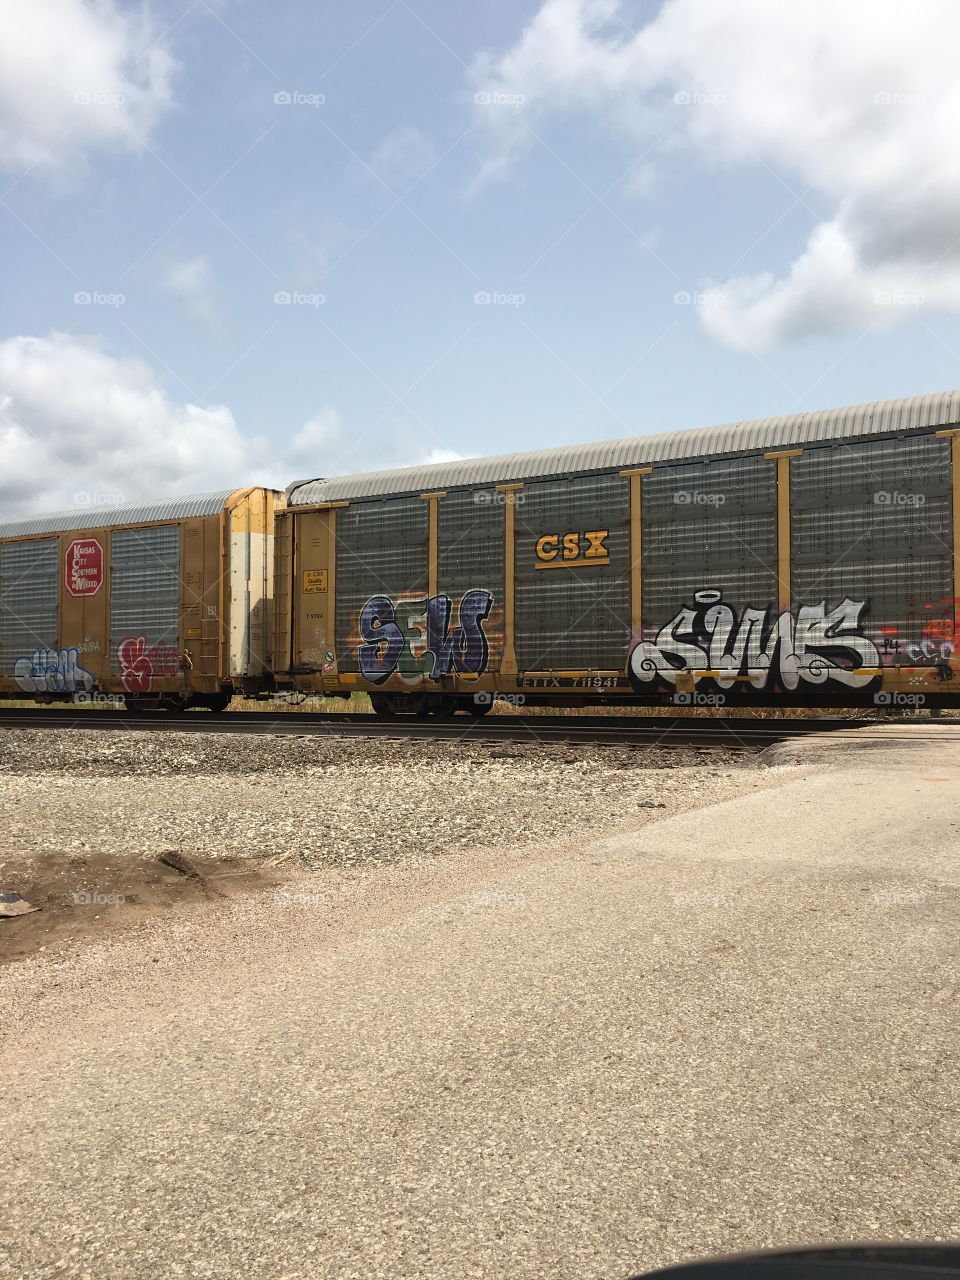 Railway graffiti 3